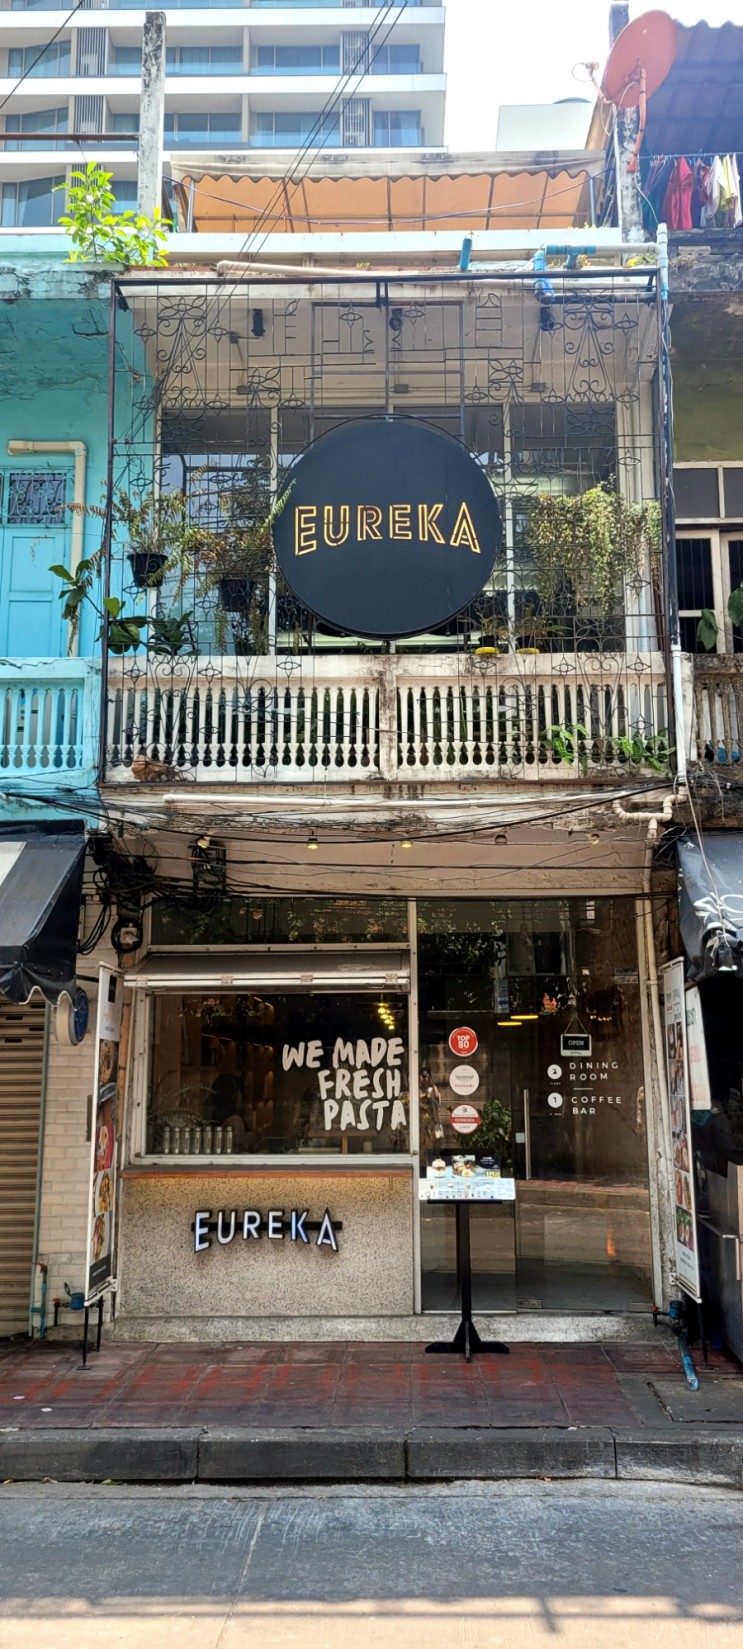 [방콕] 유레카, 노스이스트와 1분거리 살라댕역 현지 감성카페